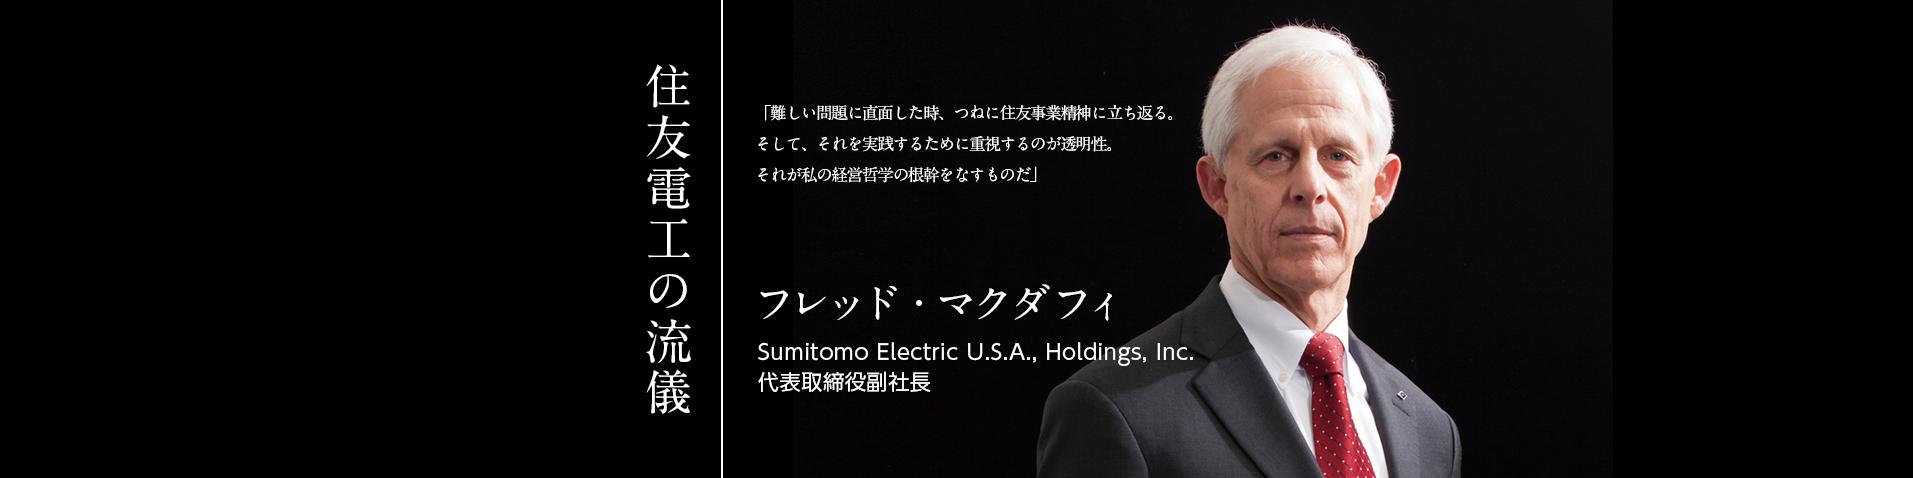 住友電工の流儀 フレッド・マクダフィ Sumitomo Electric U.S.A., Holdings, Inc. 代表取締役副社長